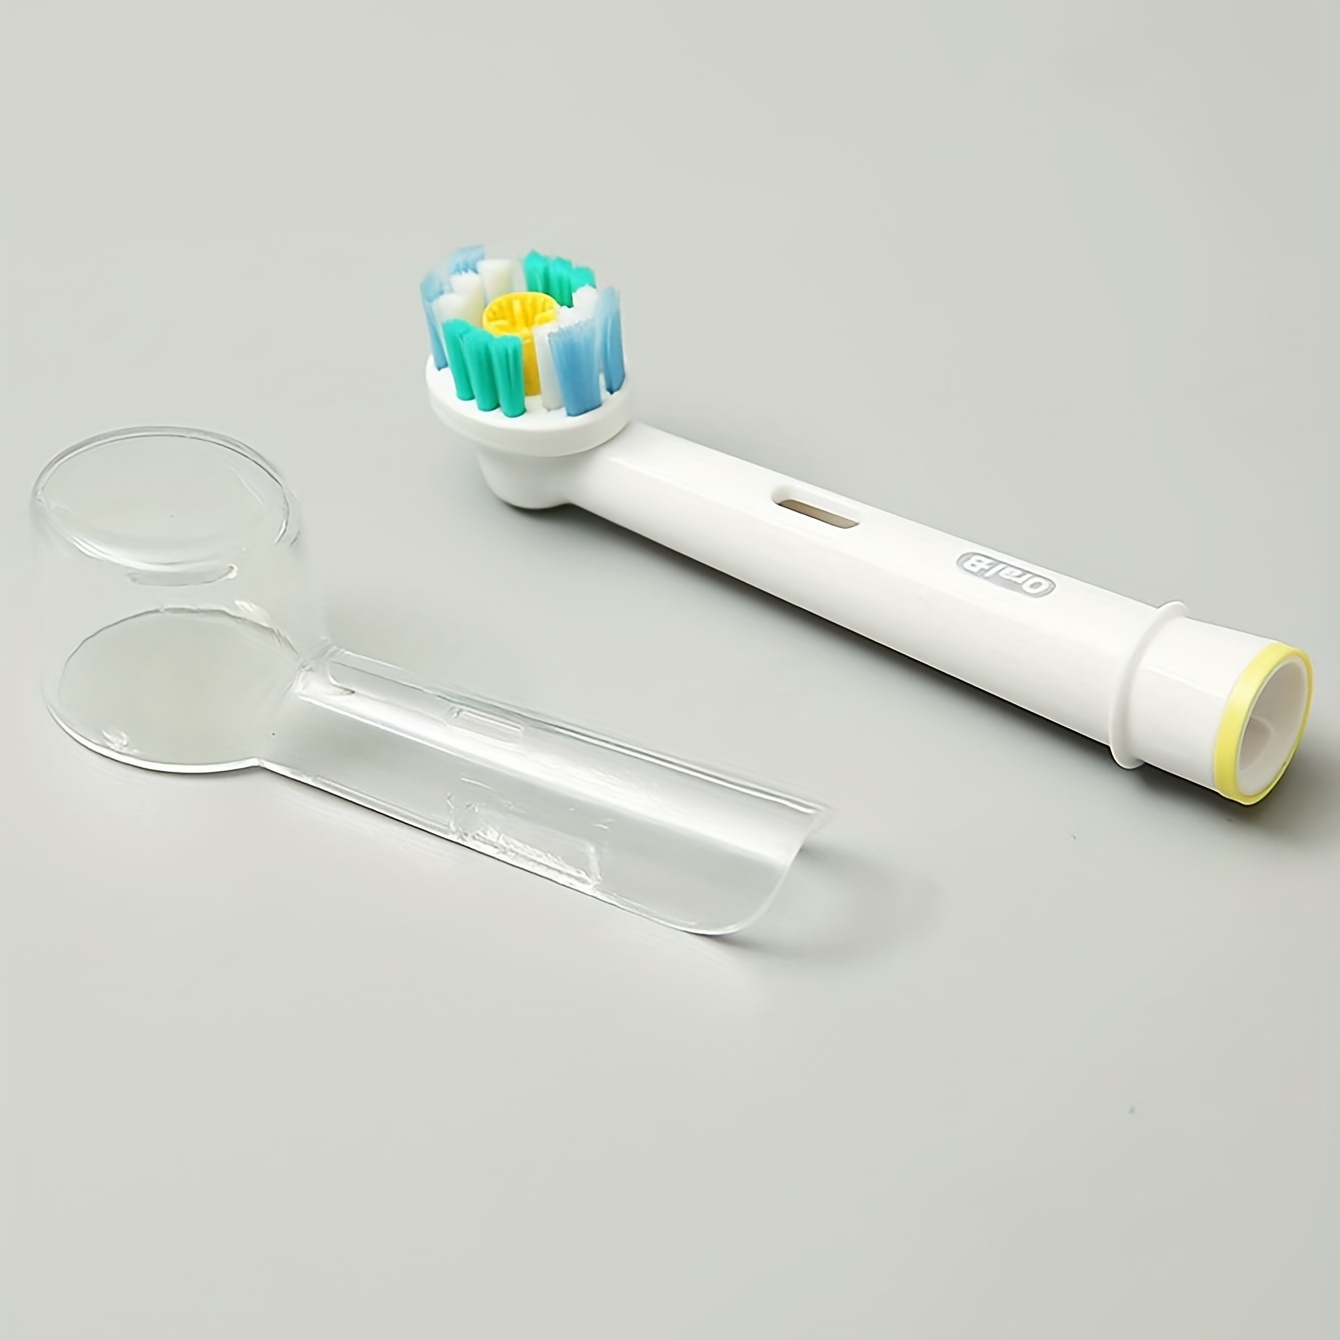 Acquista Copri testine riutilizzabili per spazzolini Oral B per mantenere  la spazzolatura e la conservazione pulite, più sane